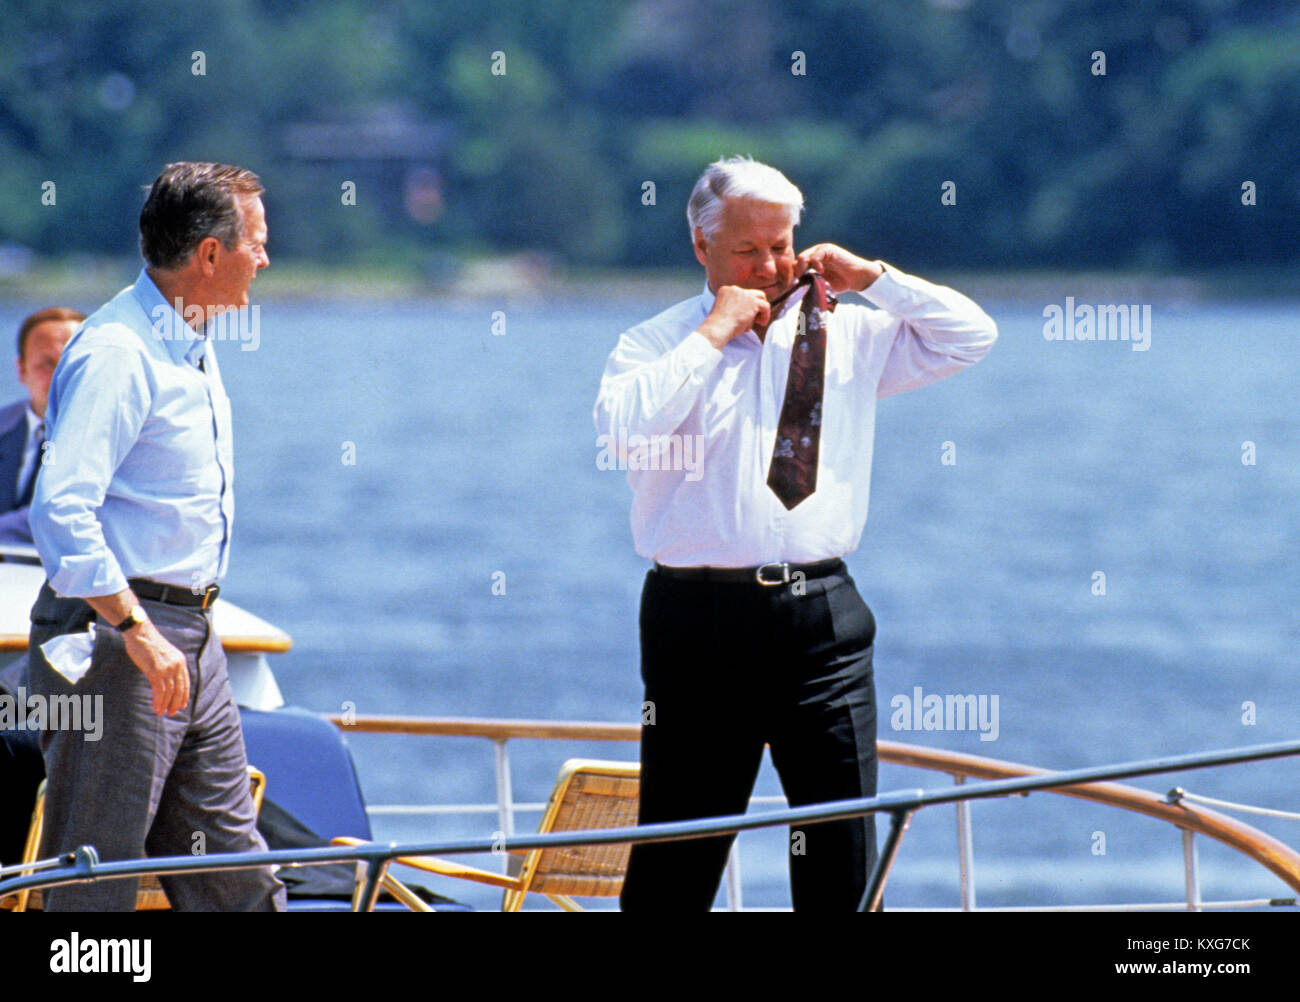 La rivière Severn, Maryland, USA. 17 Juin, 1992. Le président Boris Eltsine, de la Fédération de Russie, la droite, supprime sa cravate alors que lui et le président des États-Unis George H. W. Bush, à gauche, faire une balade en bateau sur la rivière Severn dans le Maryland le 17 juin 1992. Credit : Ron Sachs/CNP Crédit : Dennis Brack/CNP/ZUMA/Alamy Fil Live News Banque D'Images